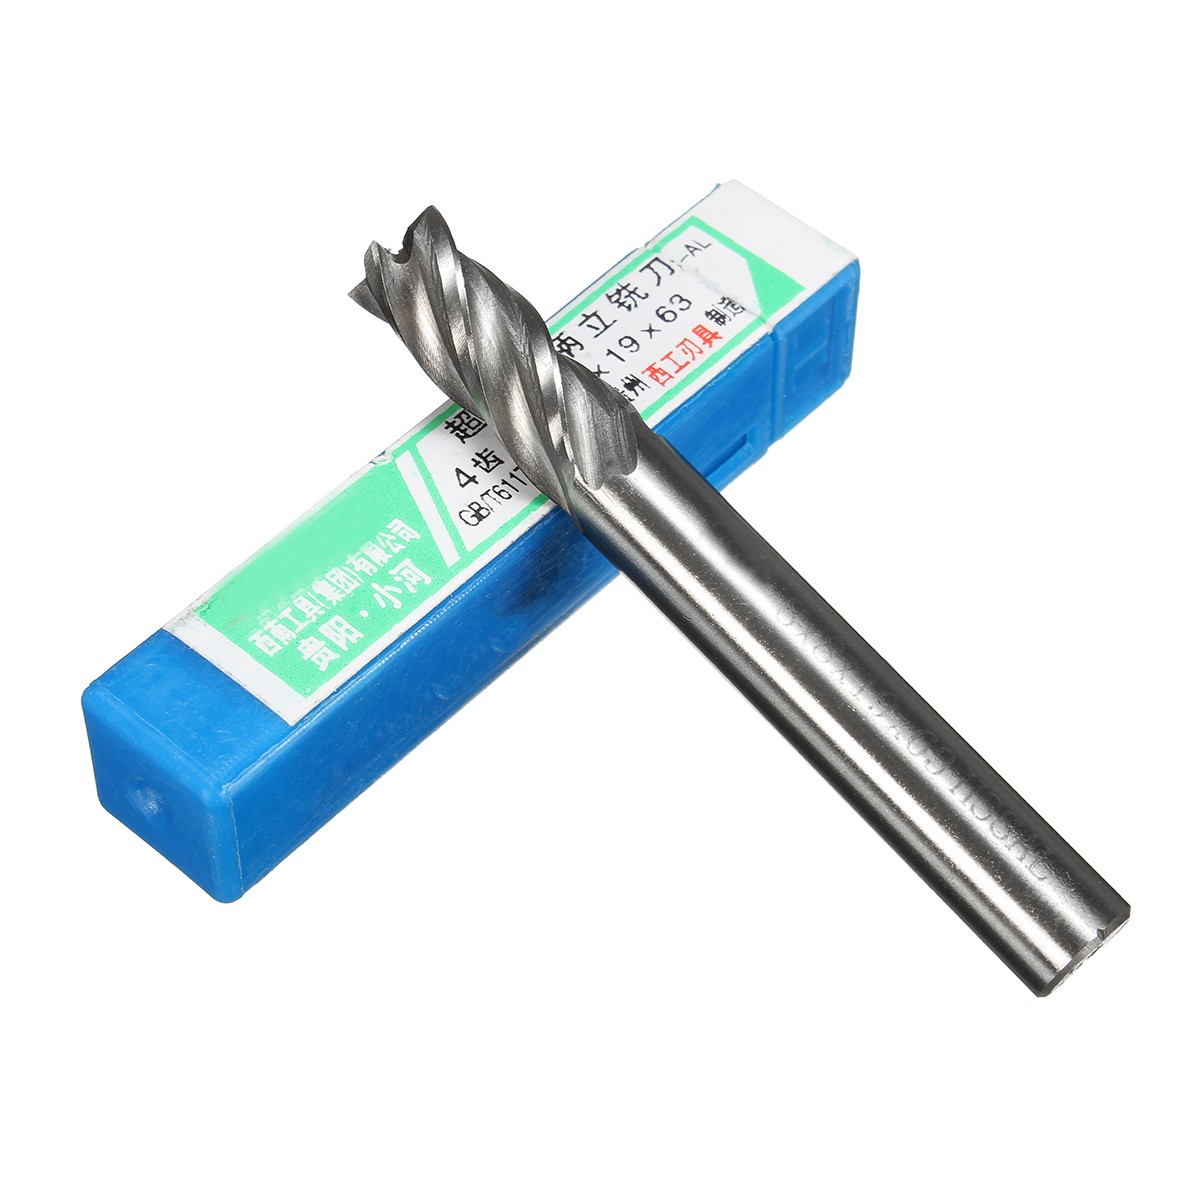 2-12mm-HSS-4-Flute-End-Mill-Cutter-Straight-Shank-Milling-Cutter-Drill-Bit-CNC-Tool-1116645-8